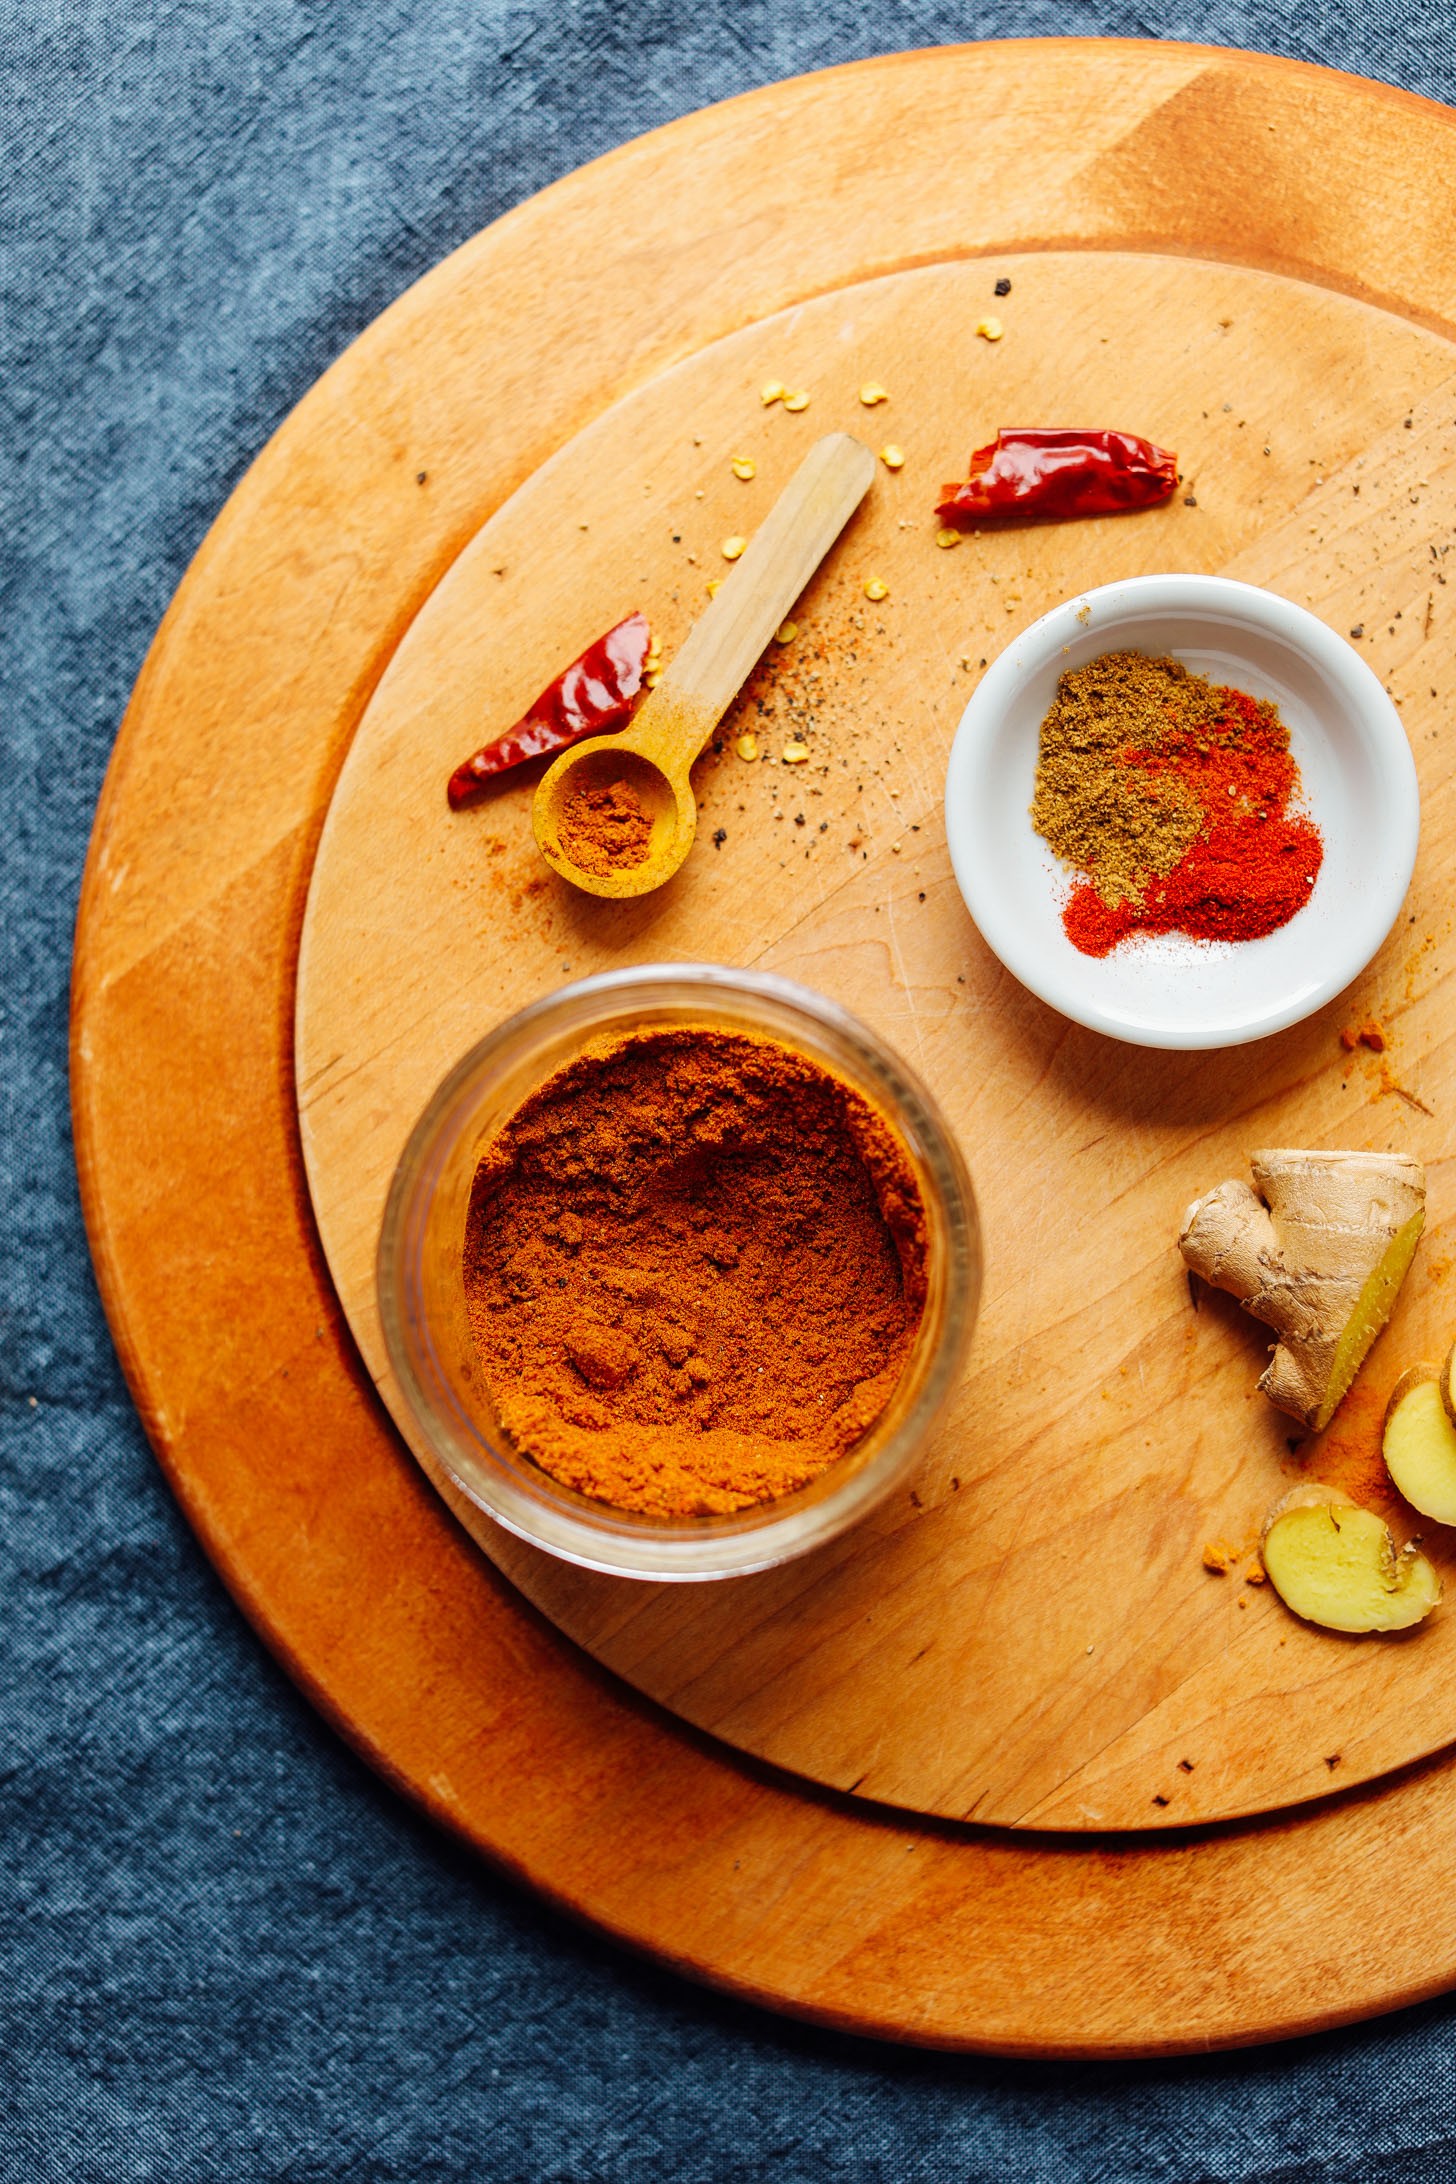 DIY Shawarma Spice ingredients on a cutting board